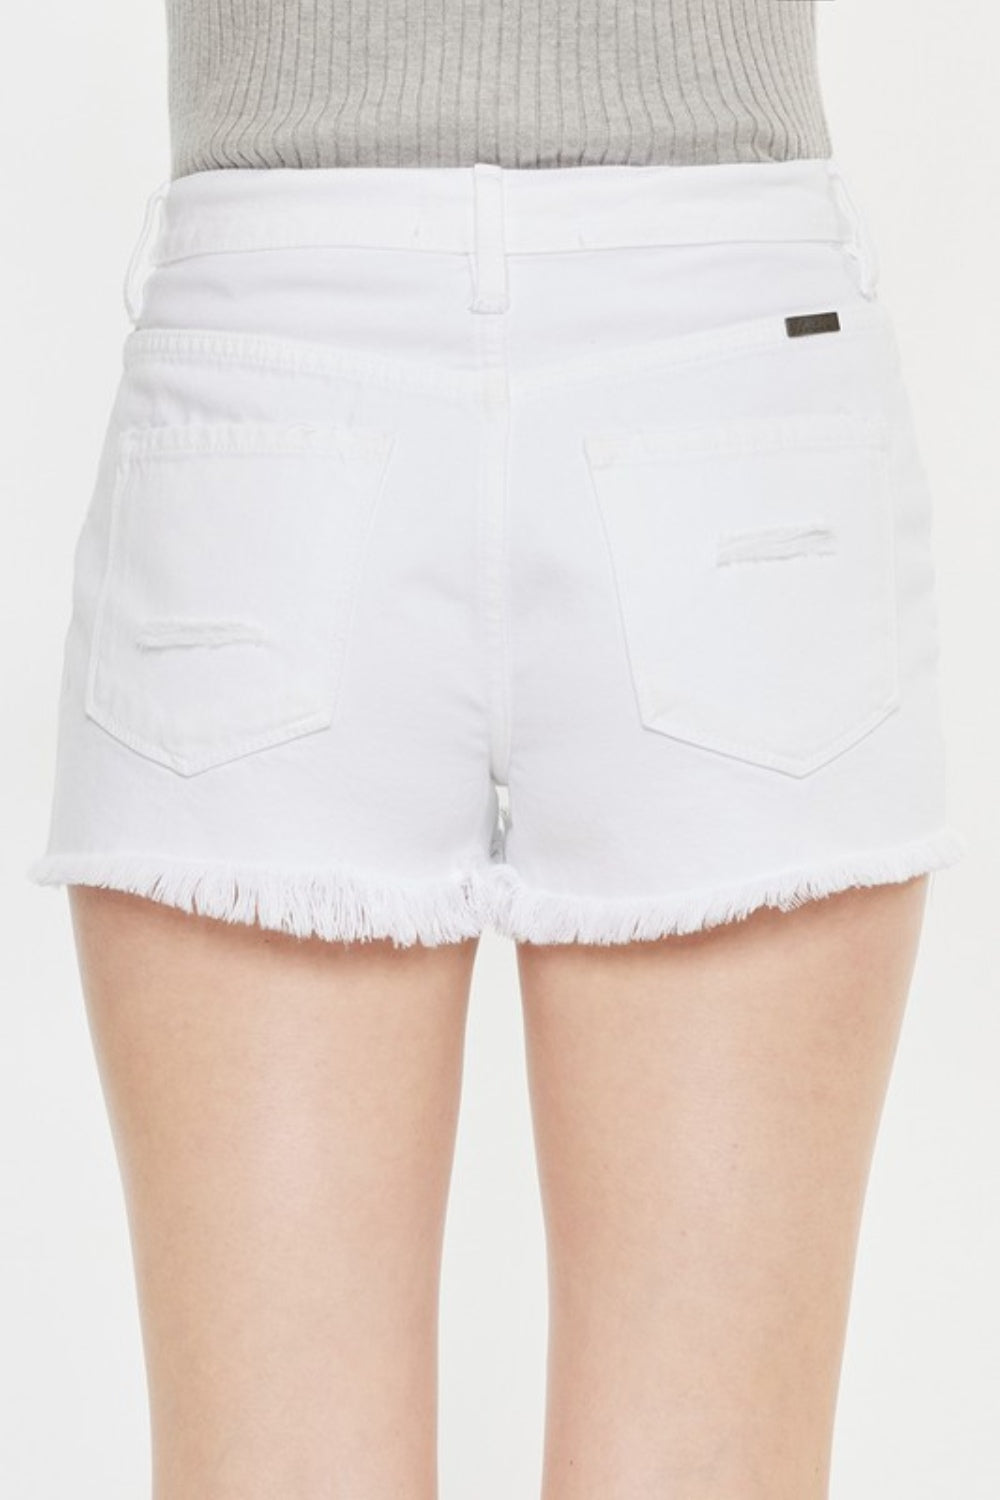 KanCan Raw Hem High Rise Distressed White Denim Shorts